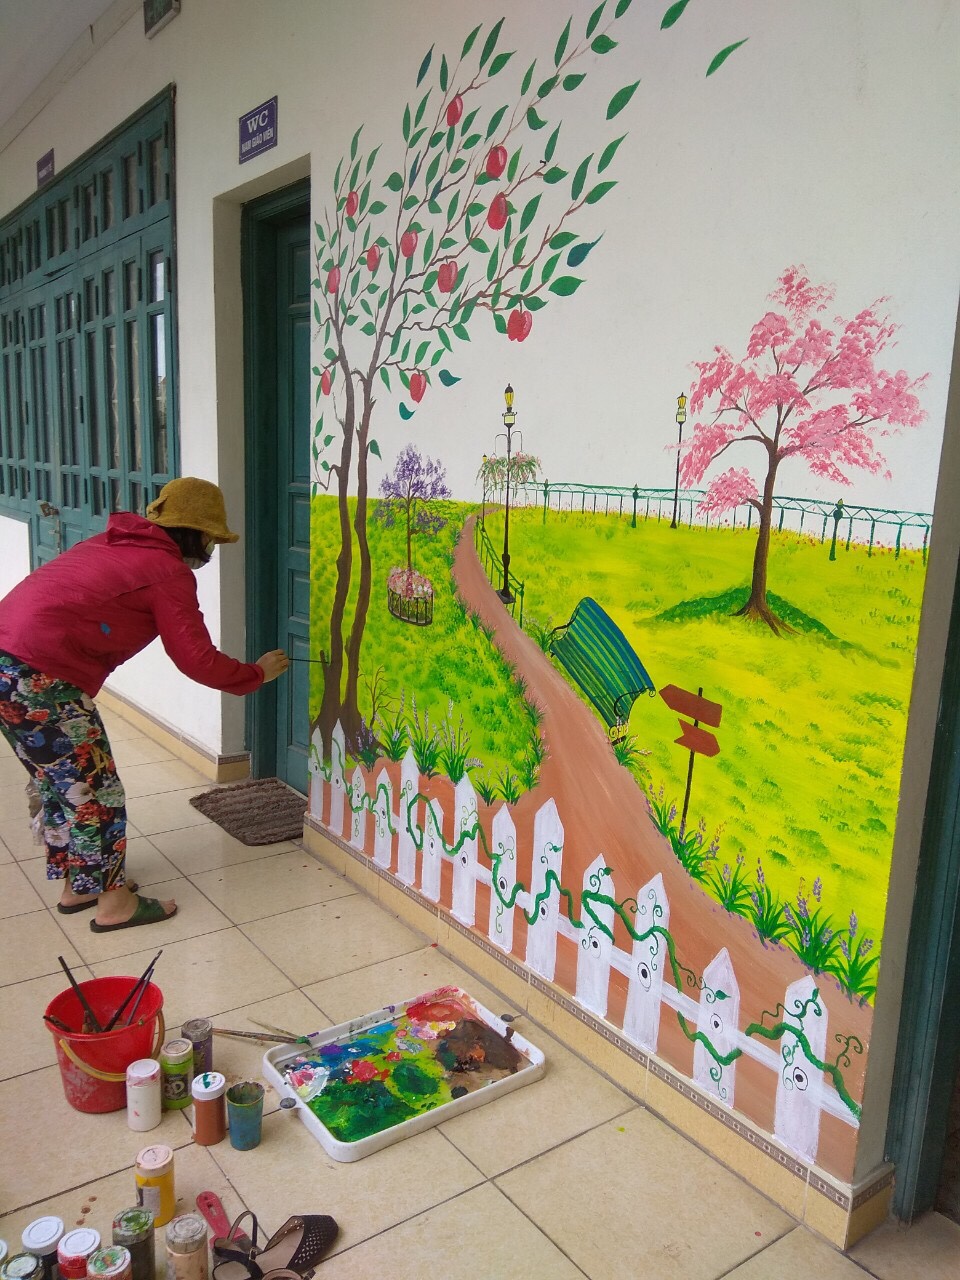 Trường THCS Trần Đăng Ninh tích cực xây dựng " Nhà vệ sinh thân thiện trong trường học" năm học 2019-2020